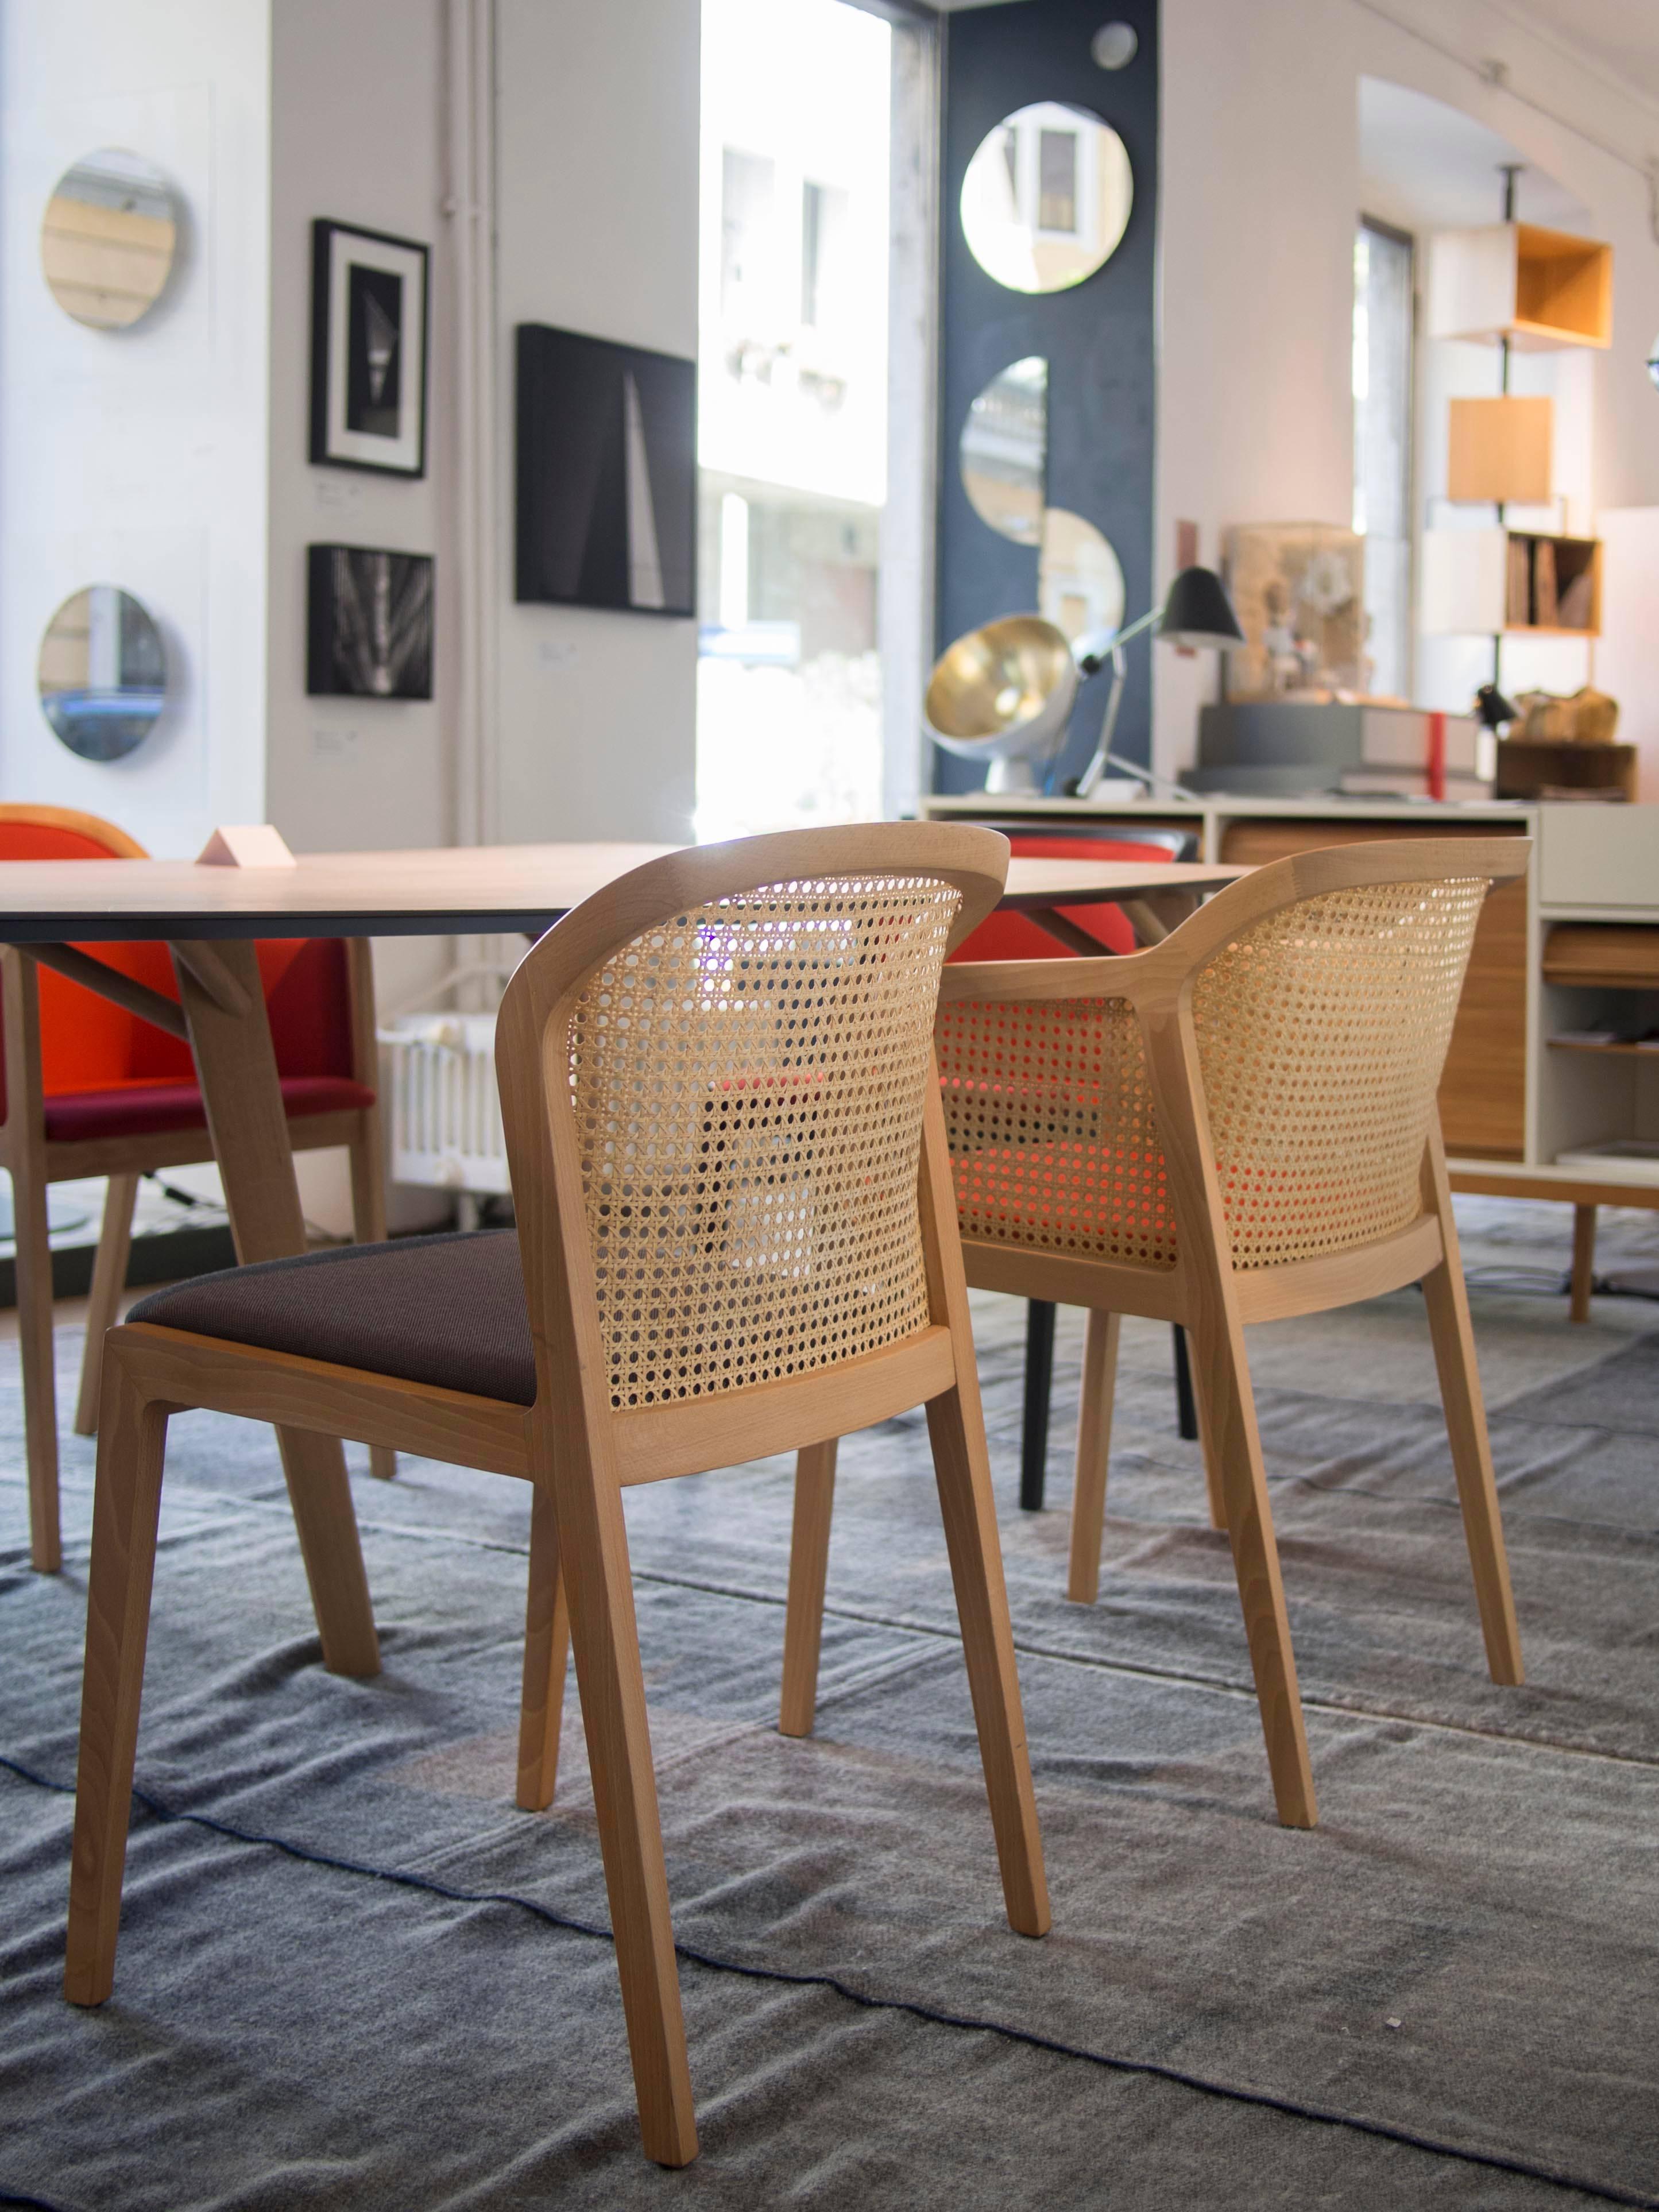 Hêtre Vienna Little Armchair, Design Contemporary inspiré des chaises traditionnelles en paille en vente